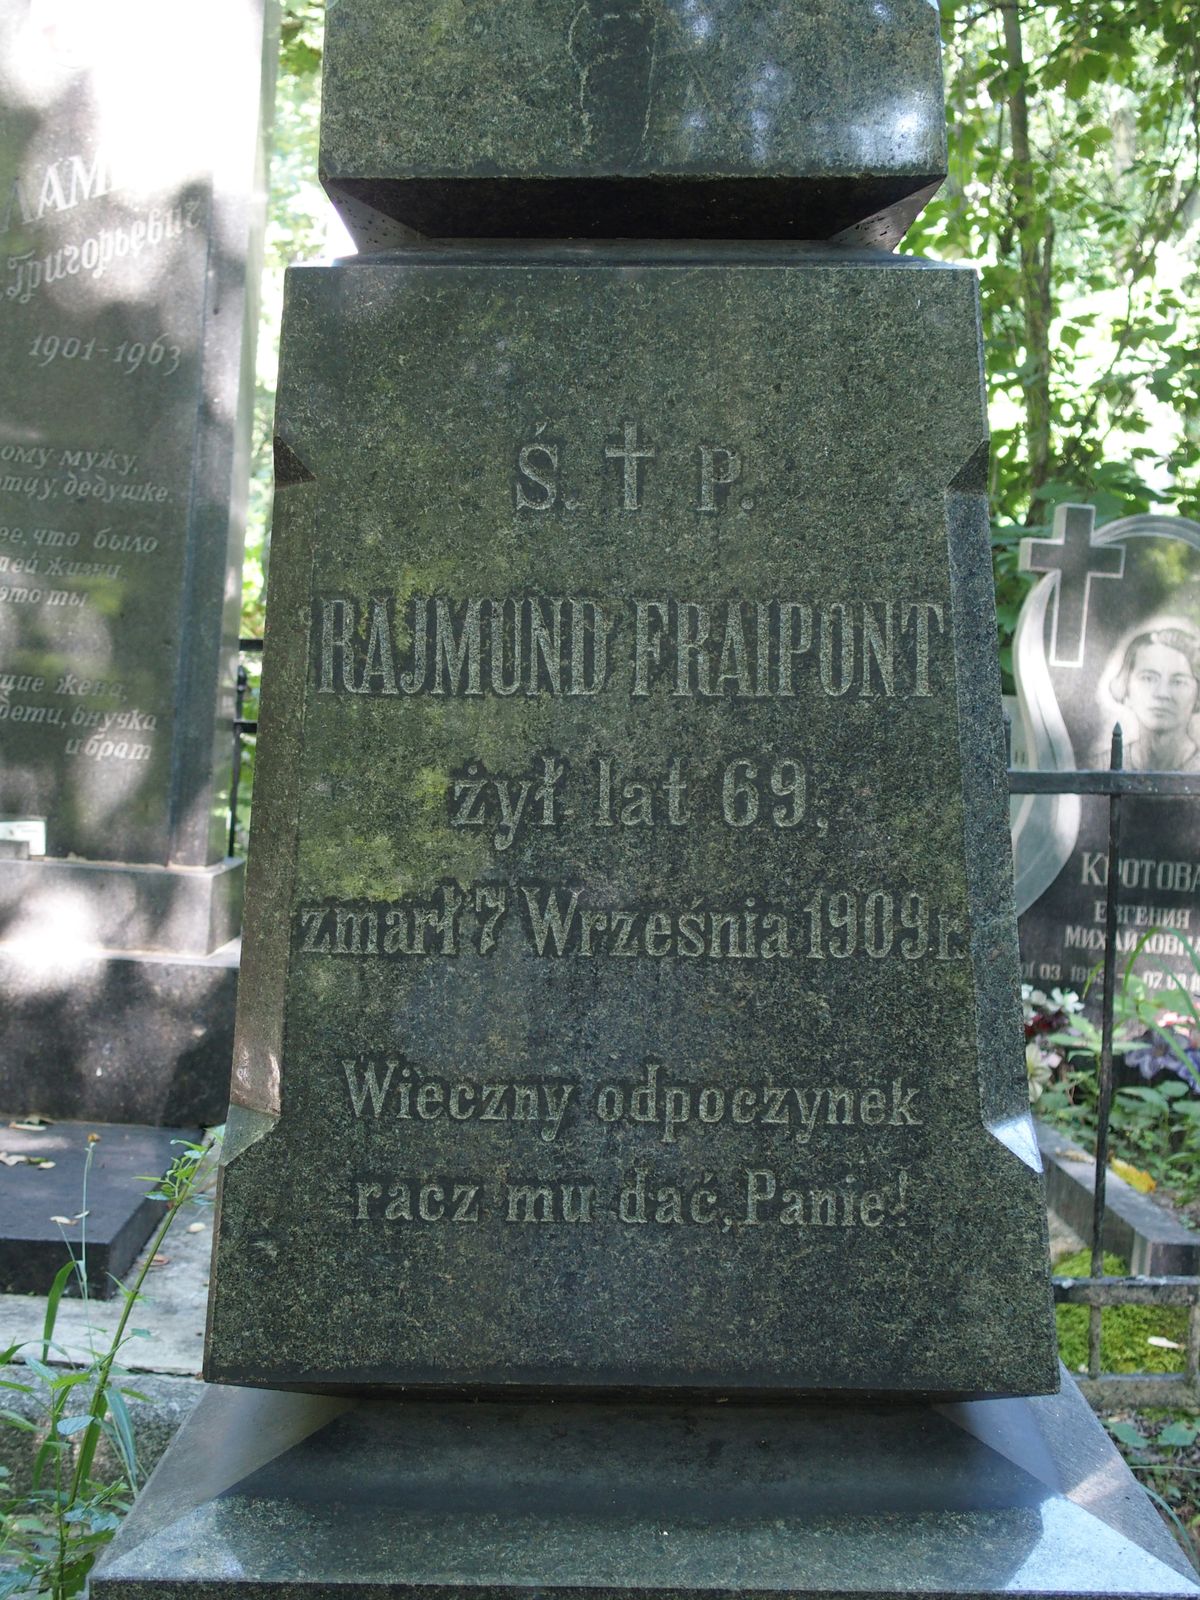 Napis z nagrobka Rajmunda Fraiponta